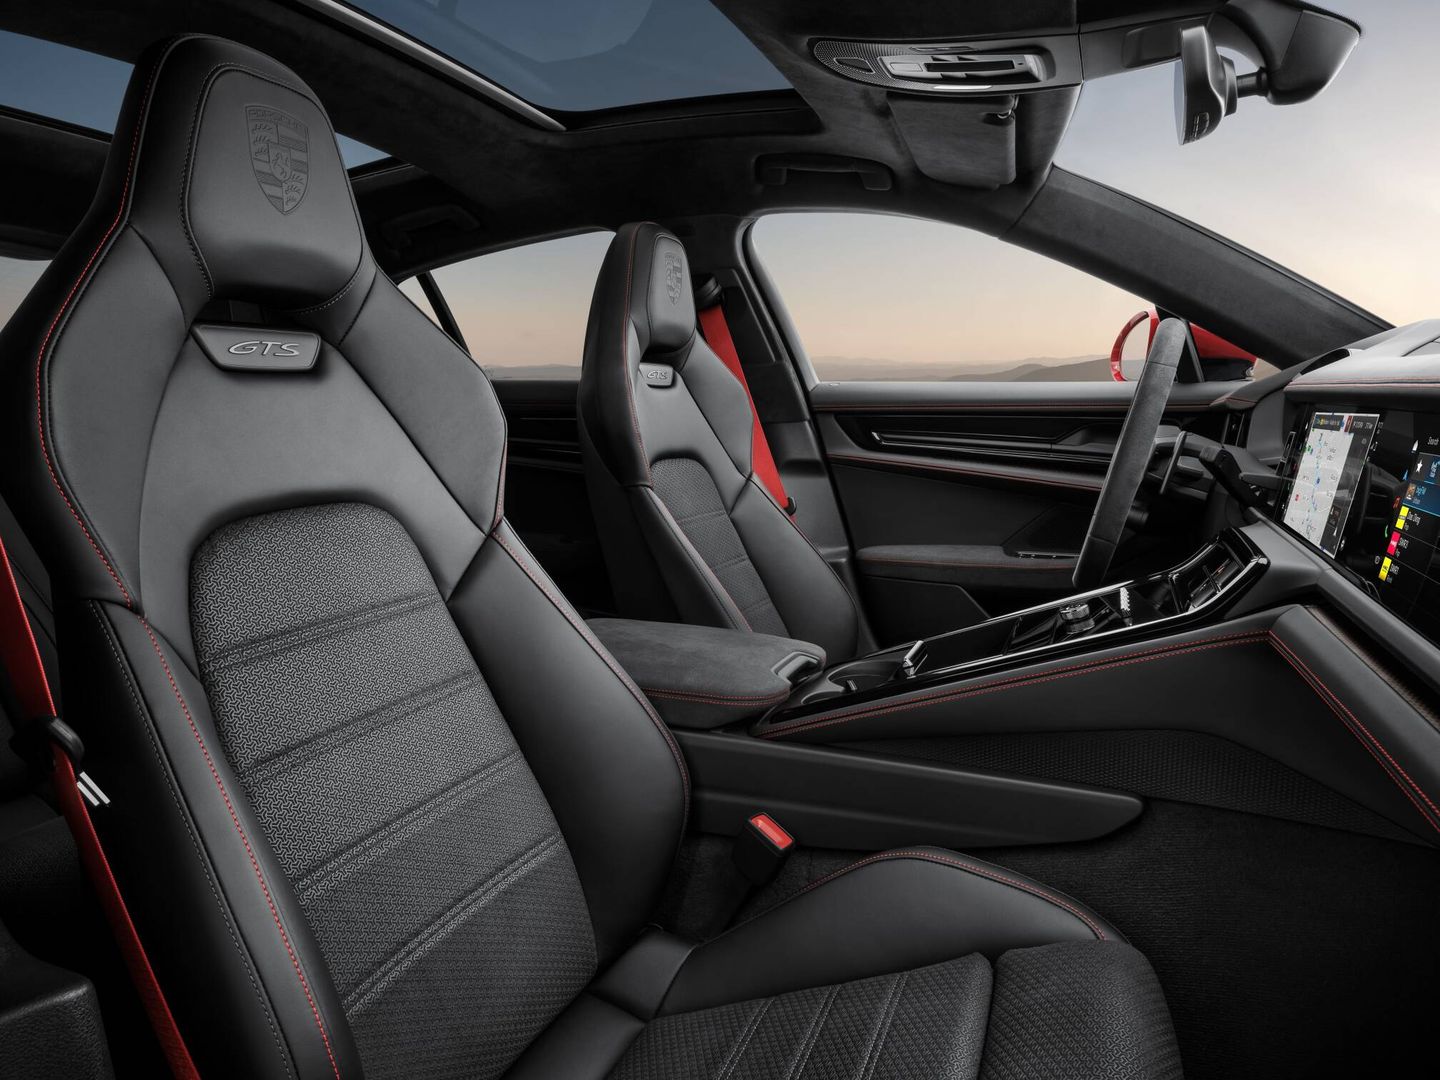 Porsche ofrece dos paquetes interiores específicos para el GTS en rojo Carmín o gris Pizarra Neo.